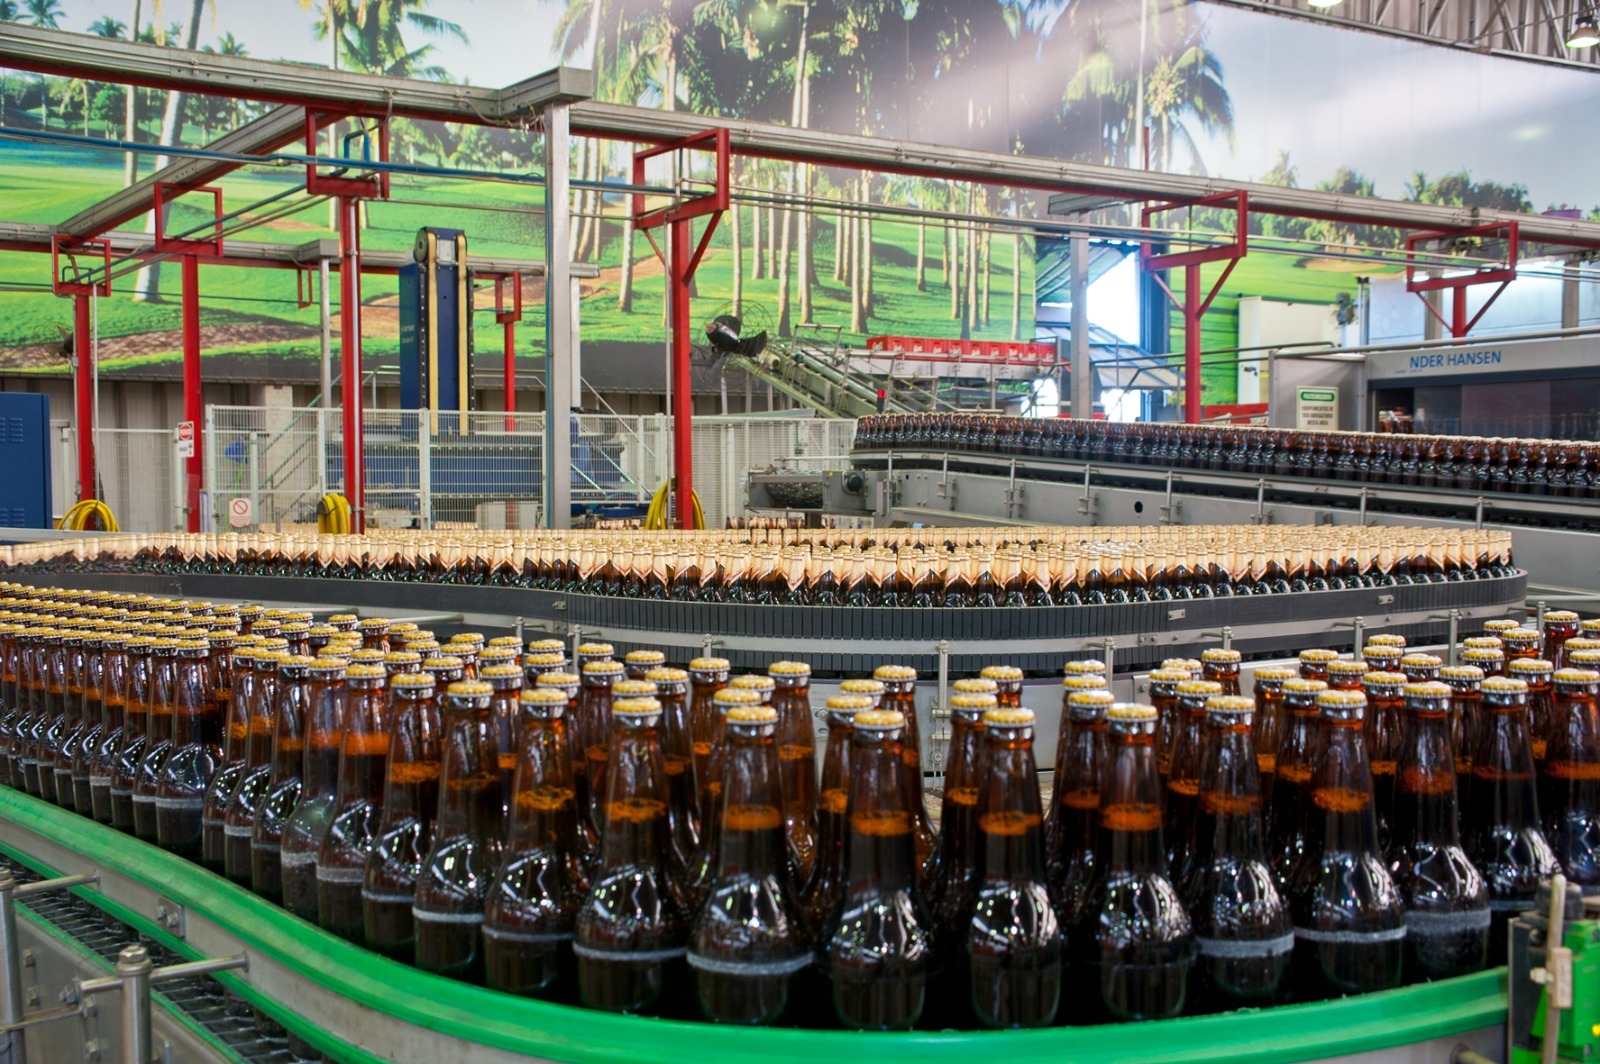 Burguesa revoluciona el concepto de la cerveza en Bolivia